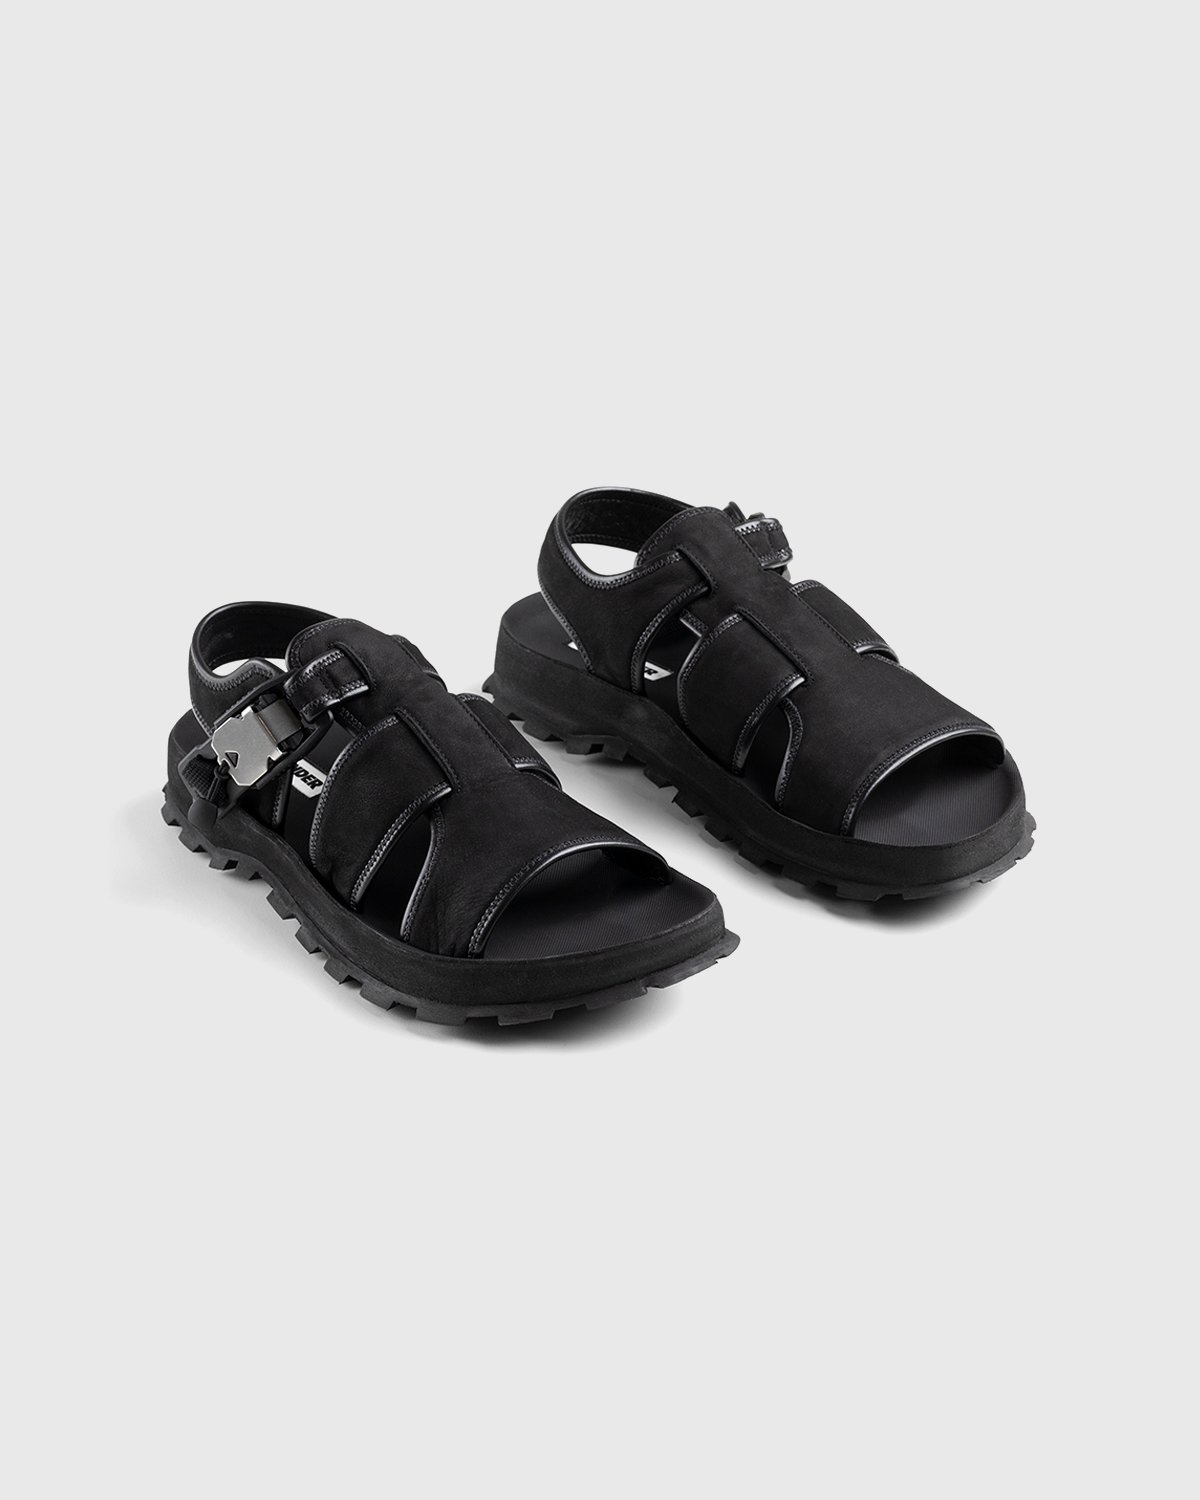 Jil Sander - Calfskin Leather Sandal Black - Footwear - Black - Image 4